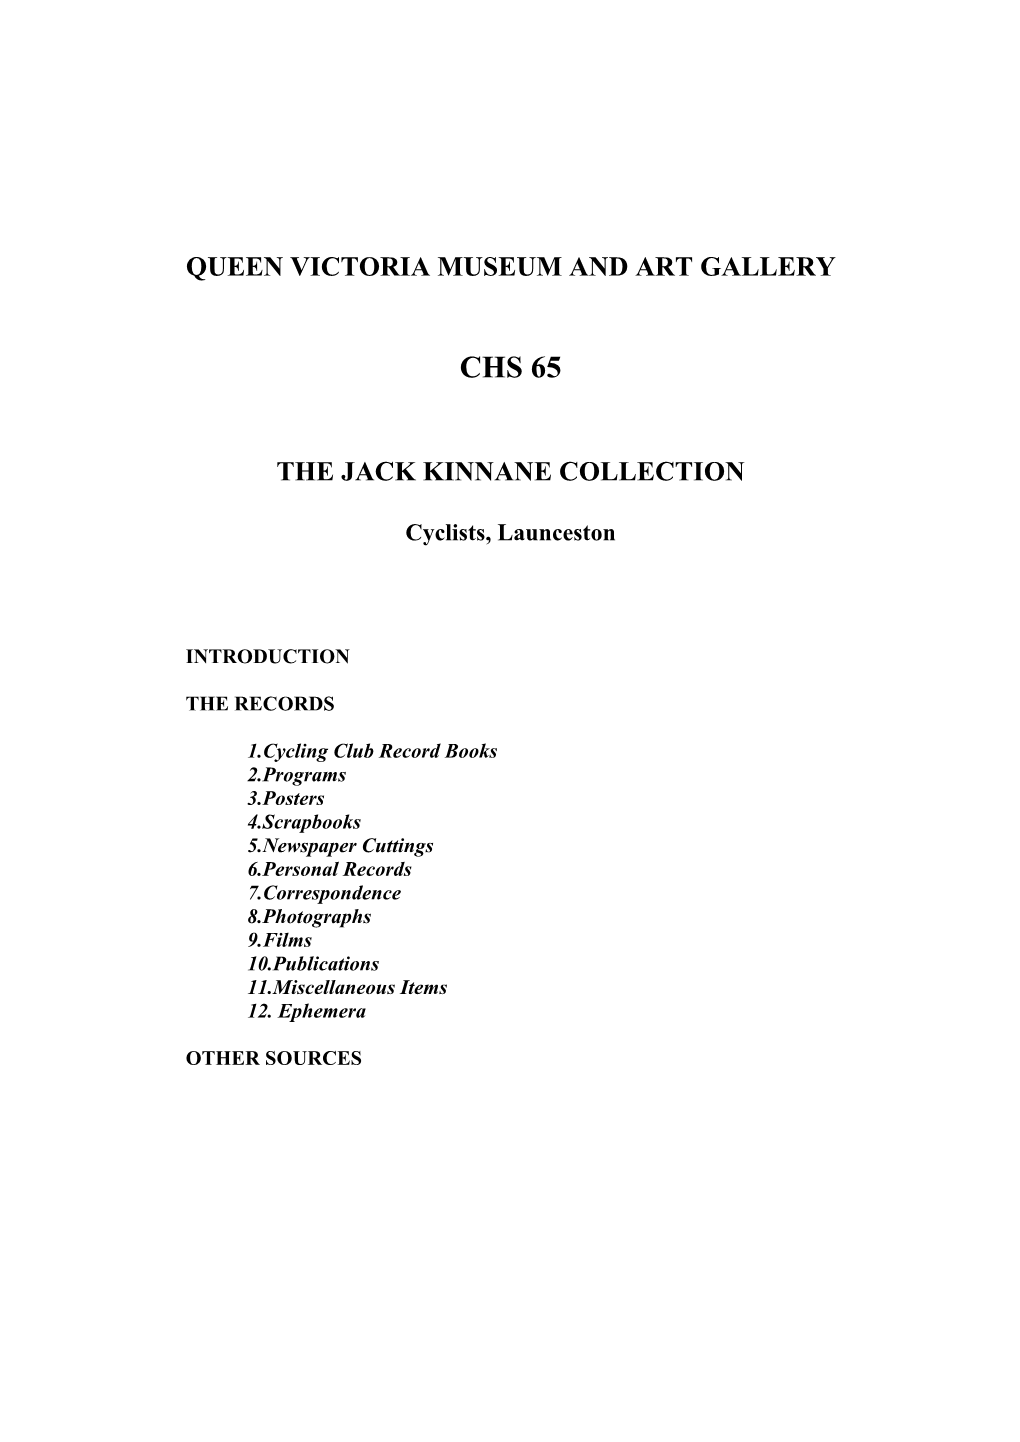 Jack Kinnane Collection